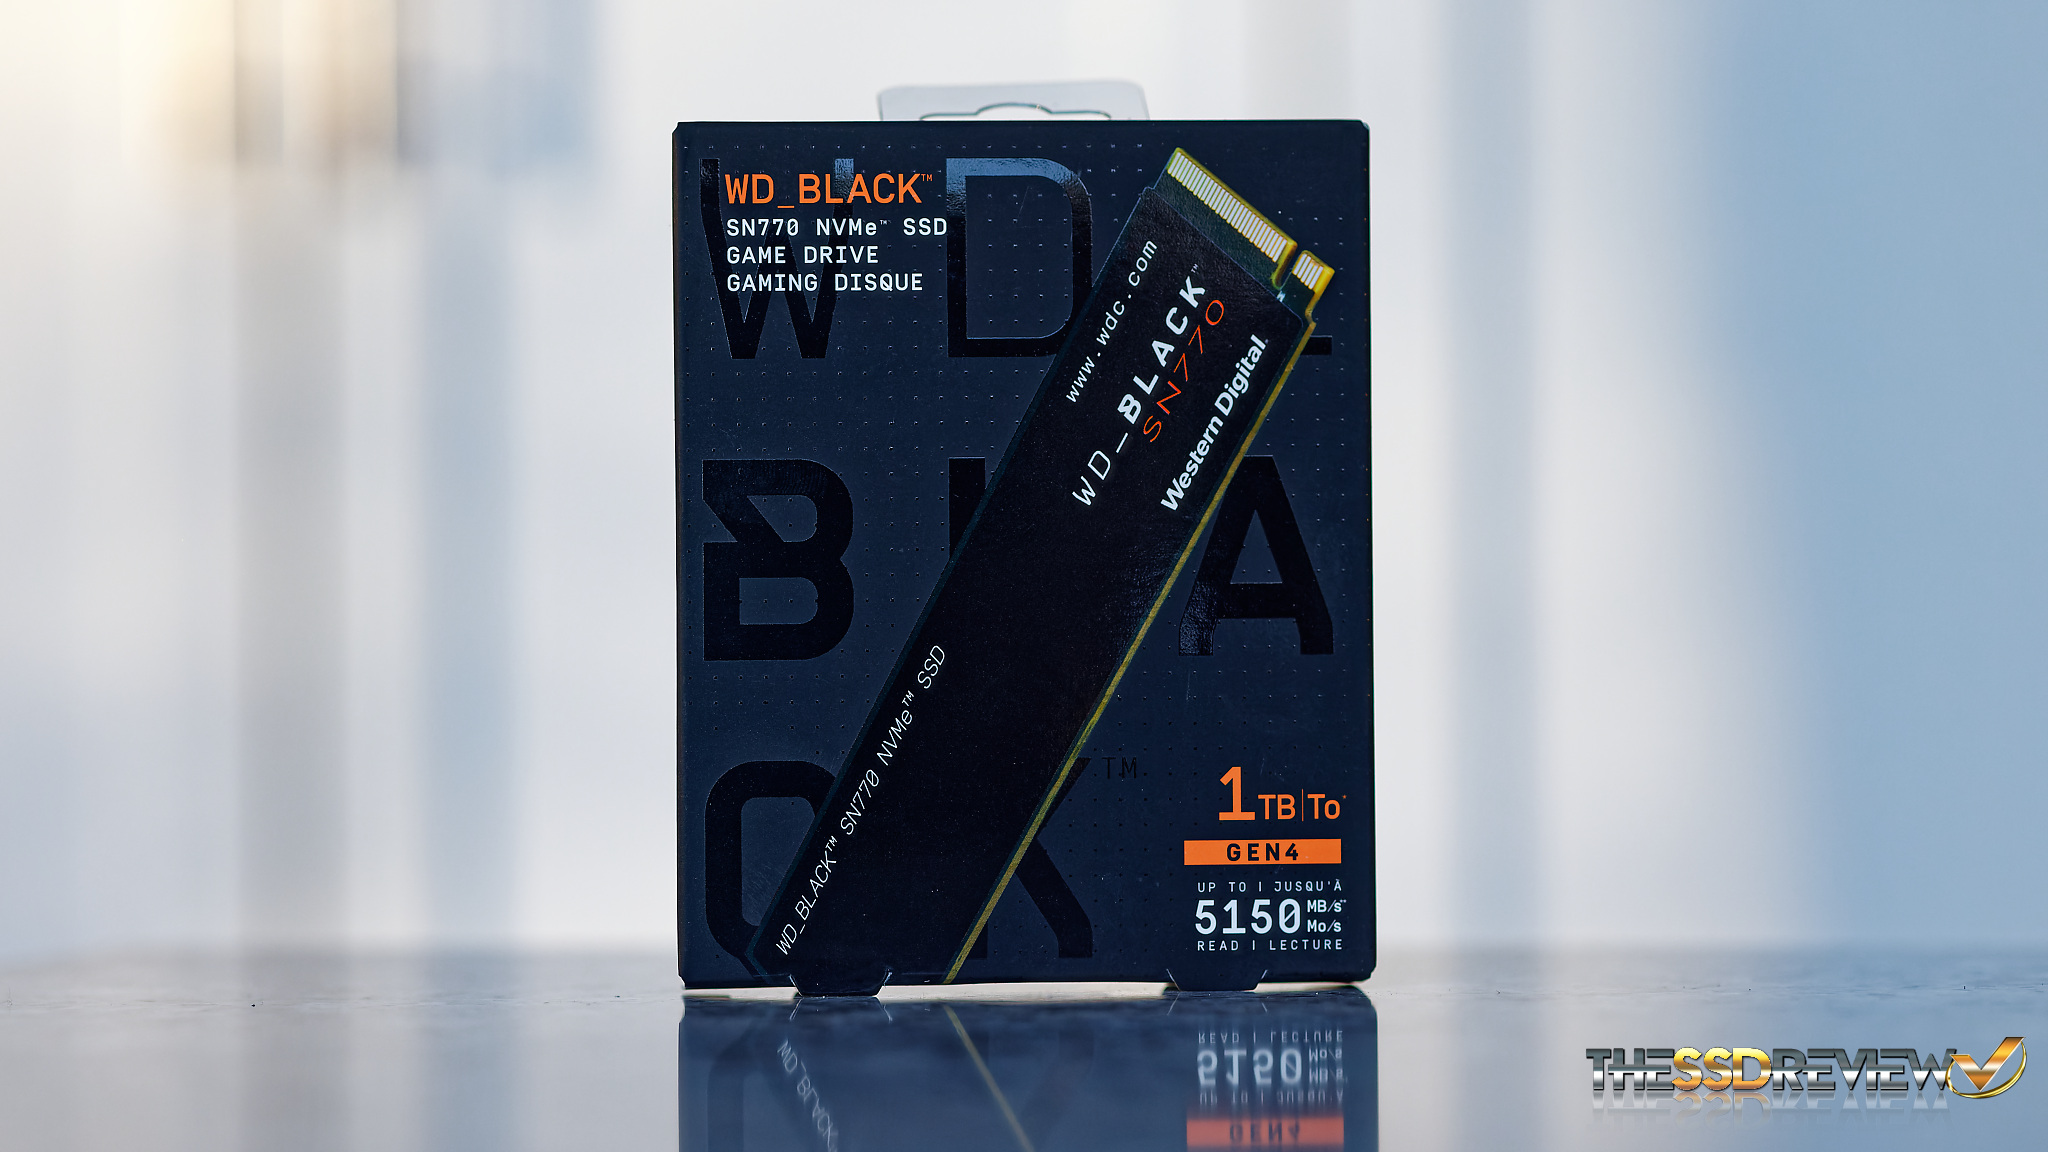 HD SSD 250GB WD BLACK SN770 M.2 NVME GEN4